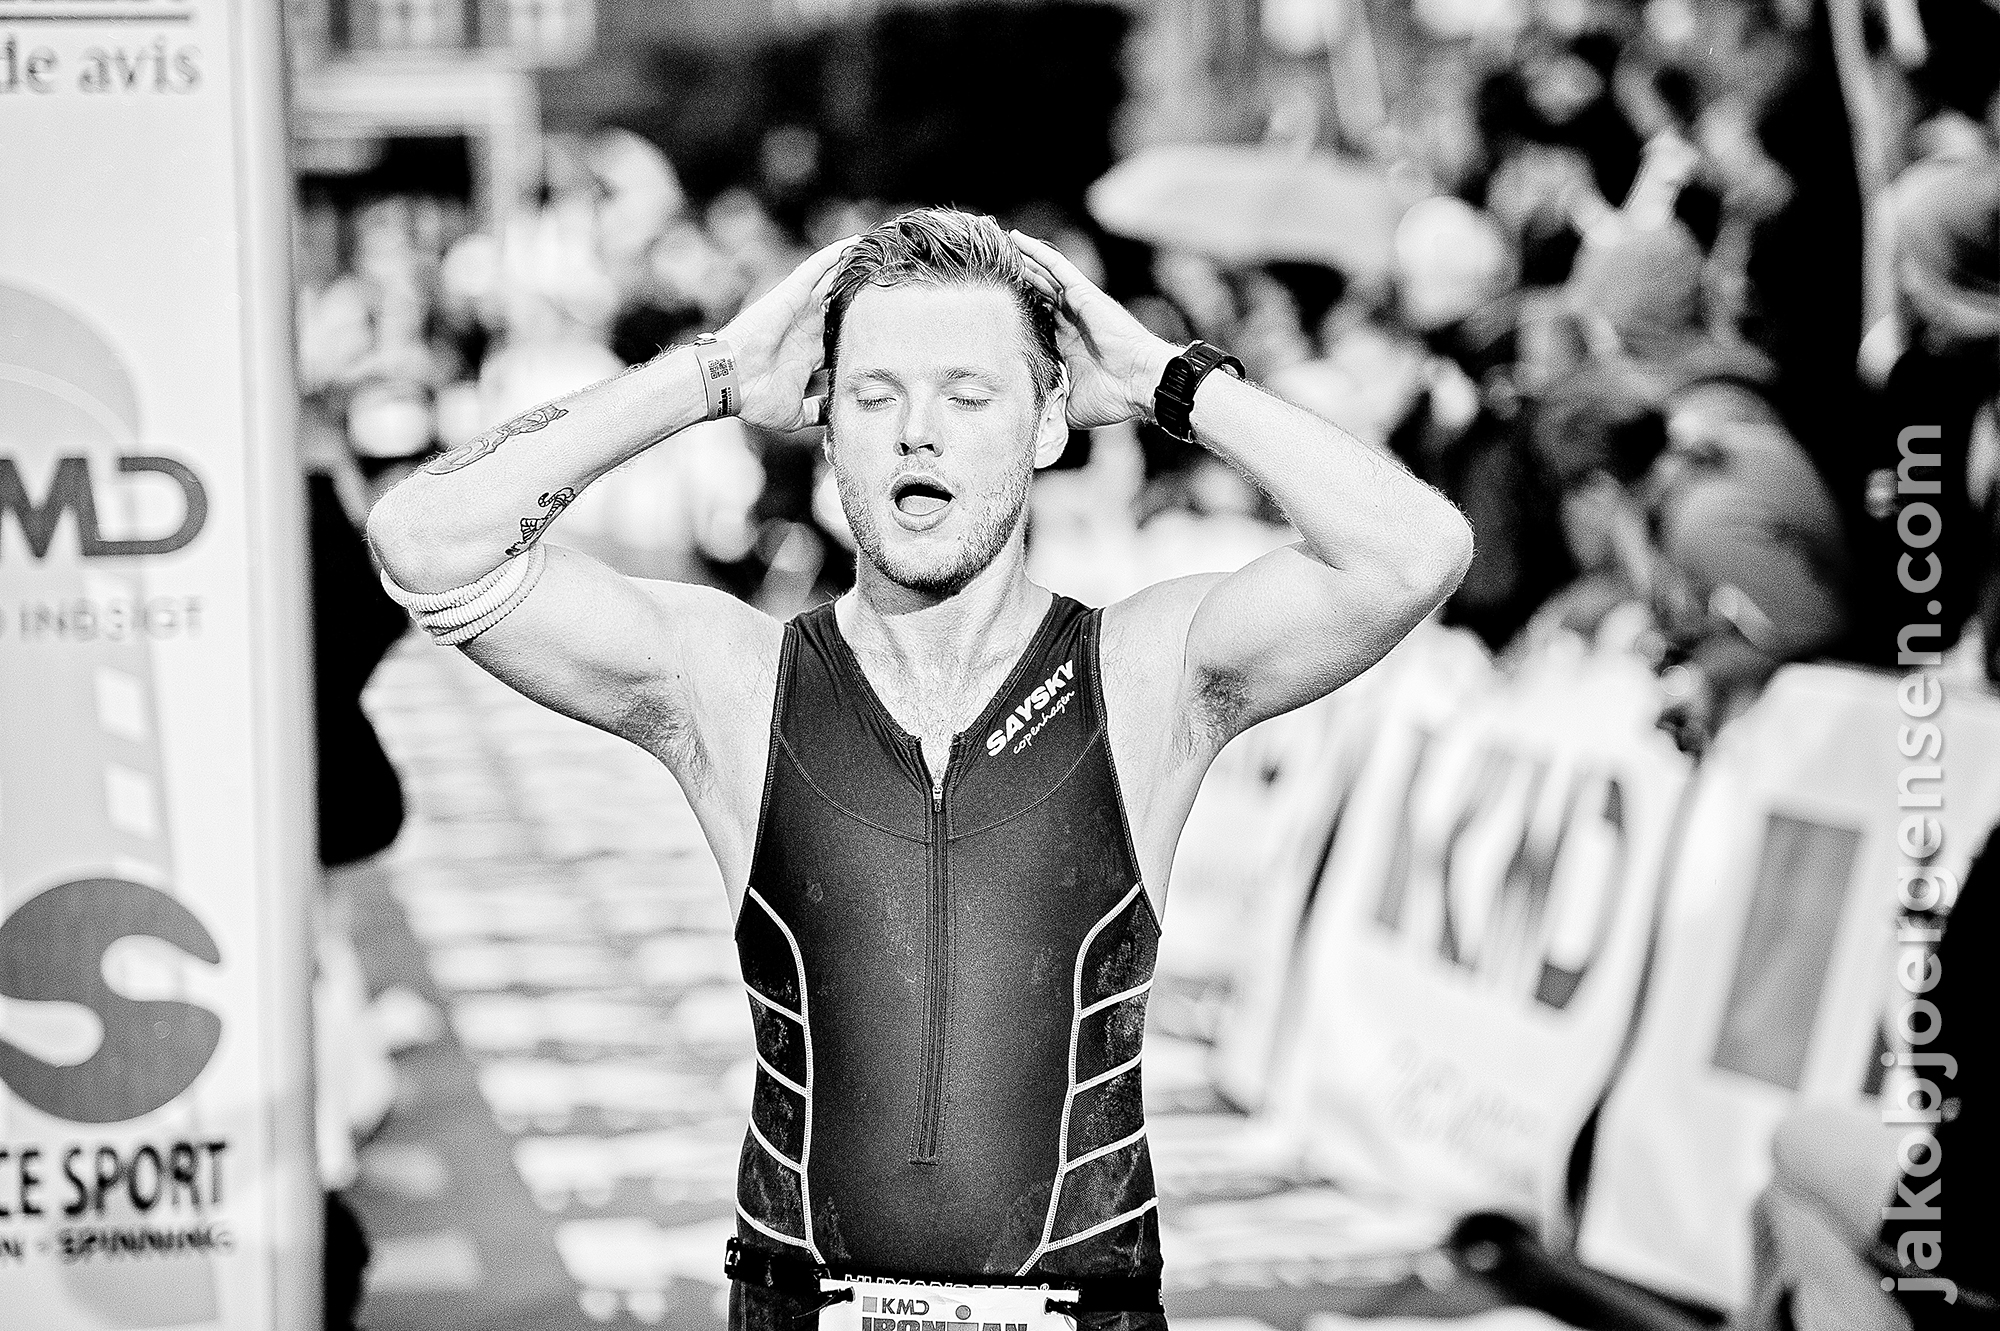 24-08-14_KMD Ironman Copenhagen 2014_0008.JPG